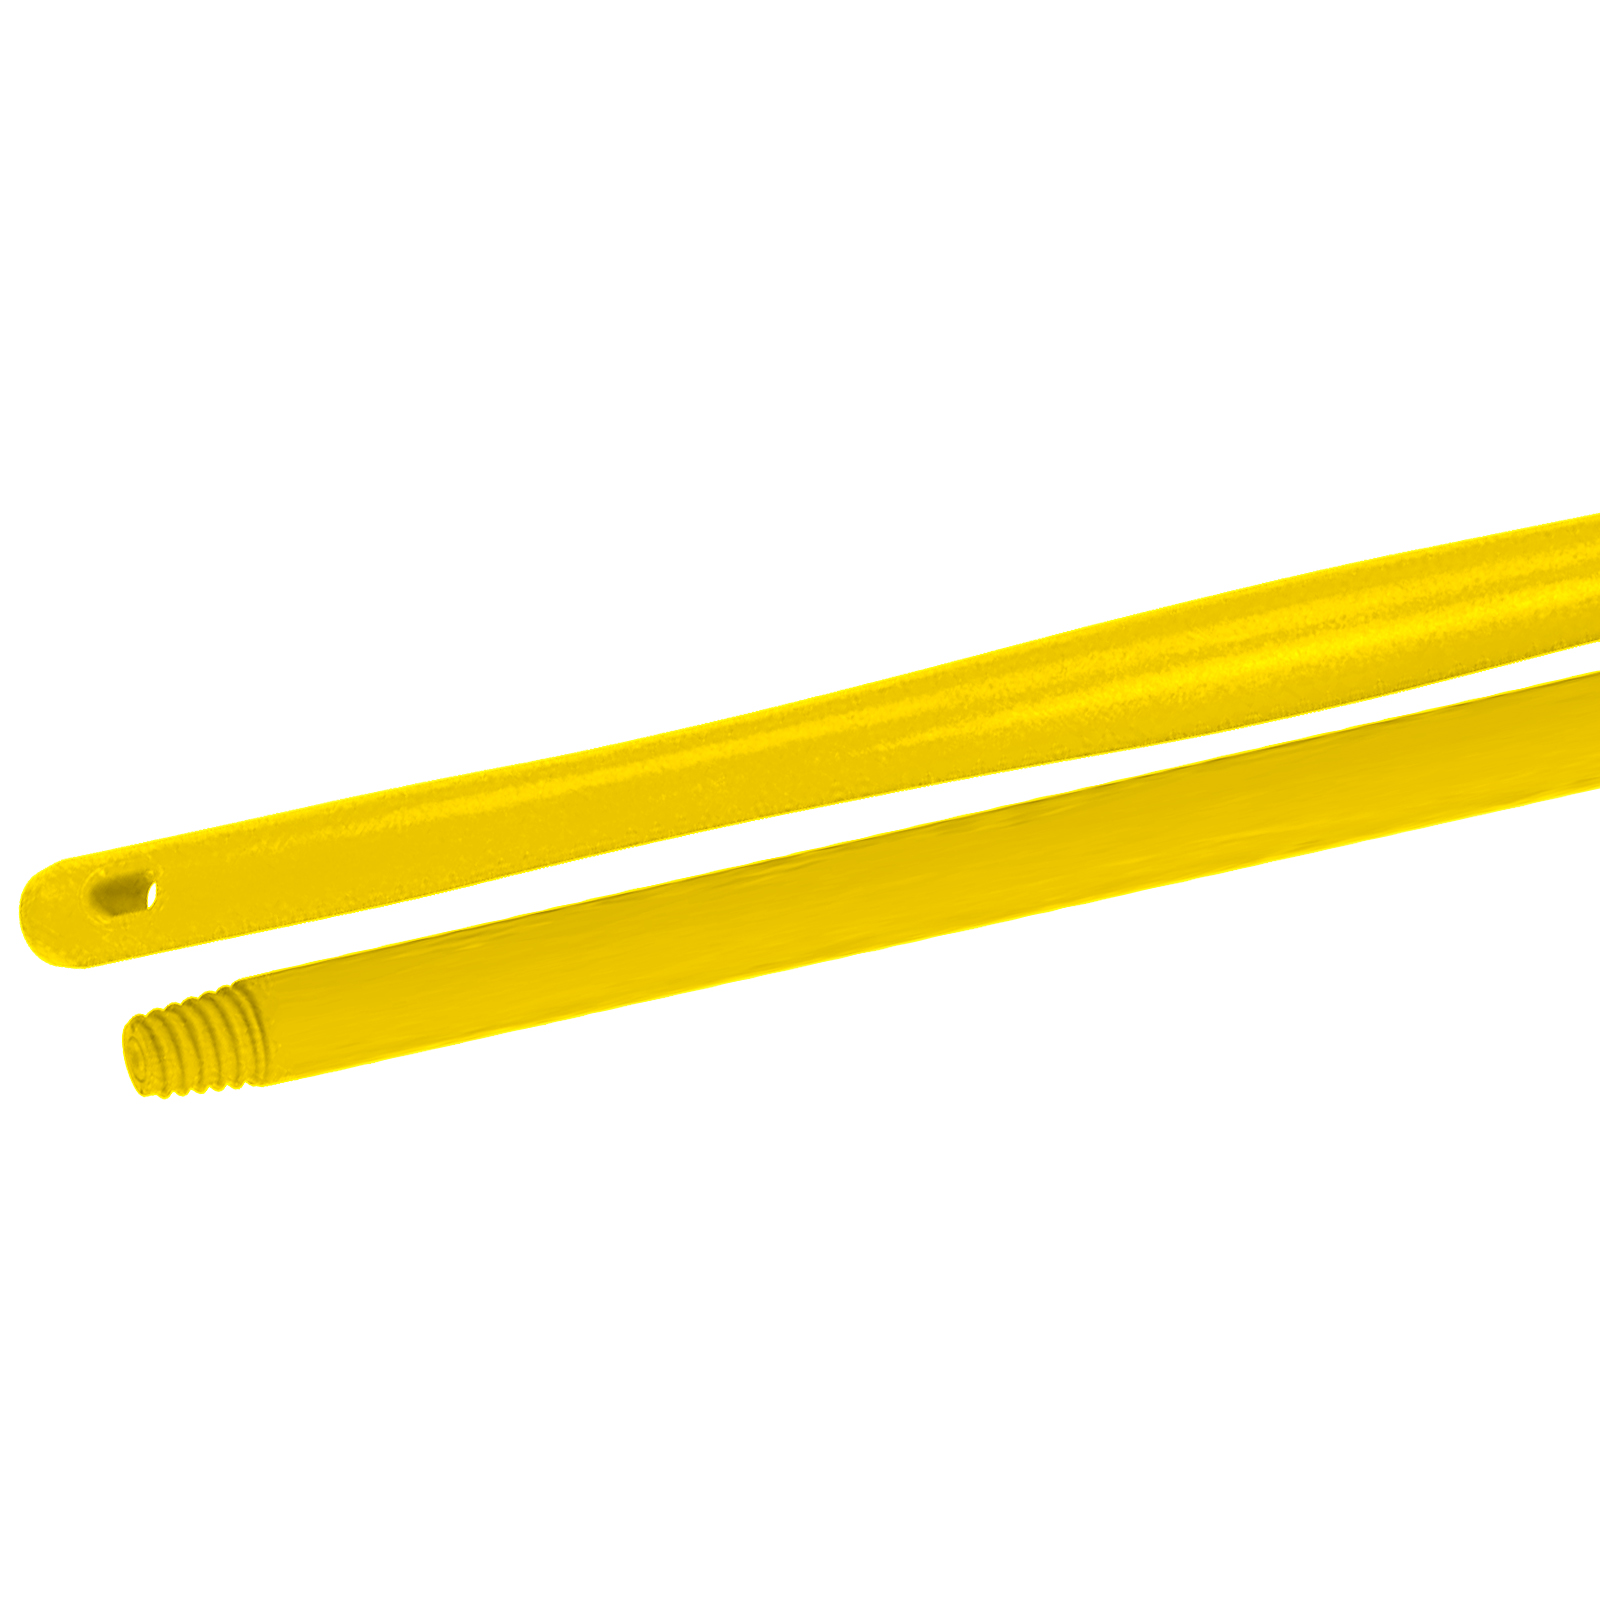 Manico monoblocco in plastica giallo 145 cm | Briantina Professional